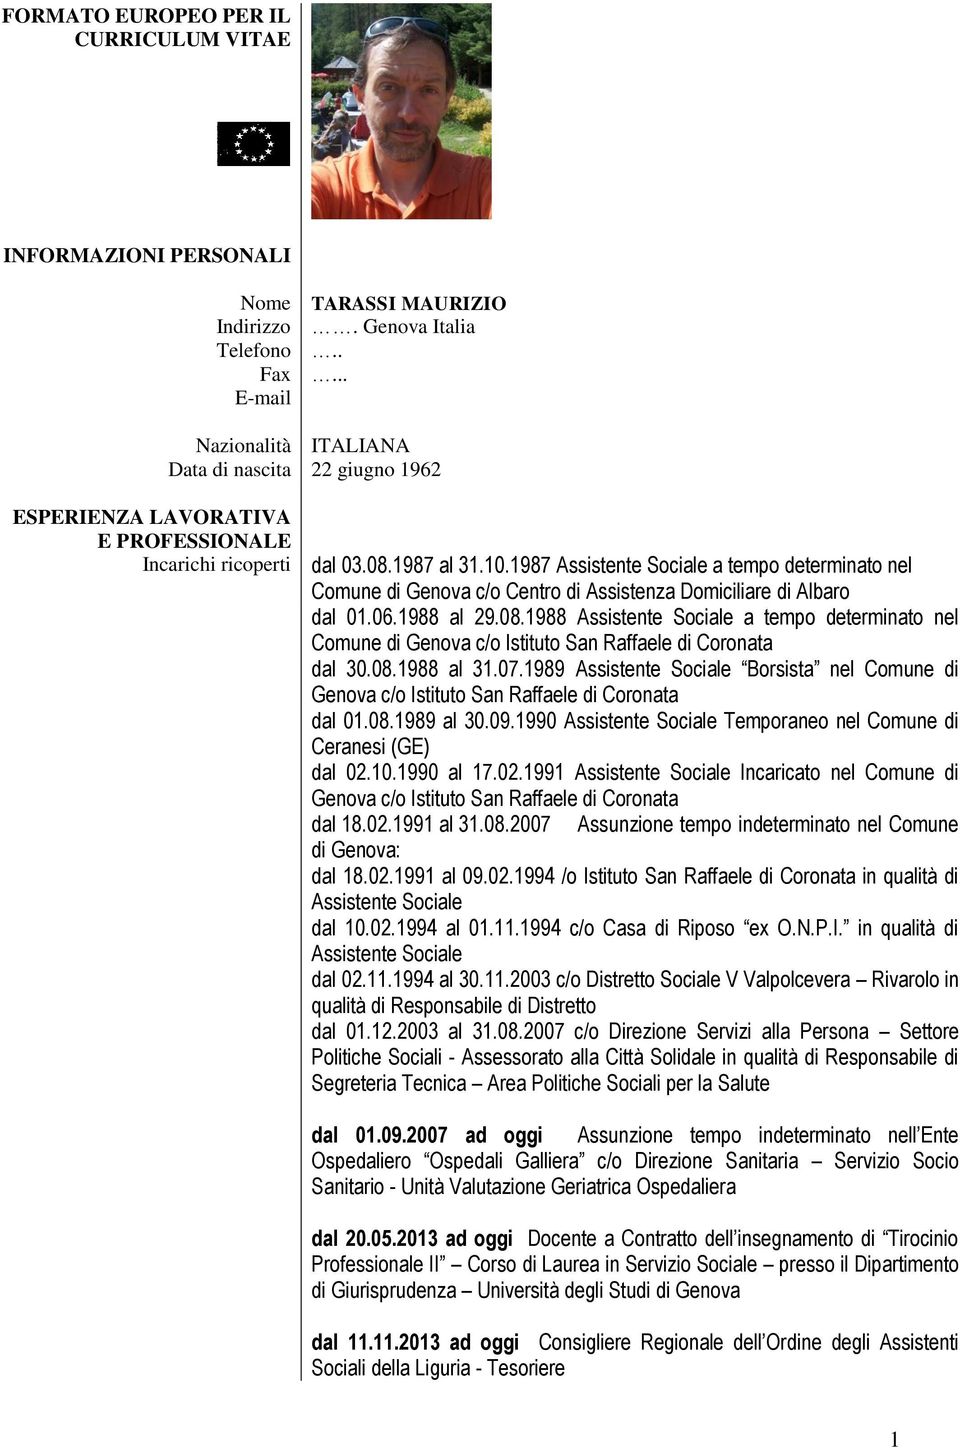 1987 Assistente Sociale a tempo determinato nel Comune di Genova c/o Centro di Assistenza Domiciliare di Albaro dal 01.06.1988 al 29.08.